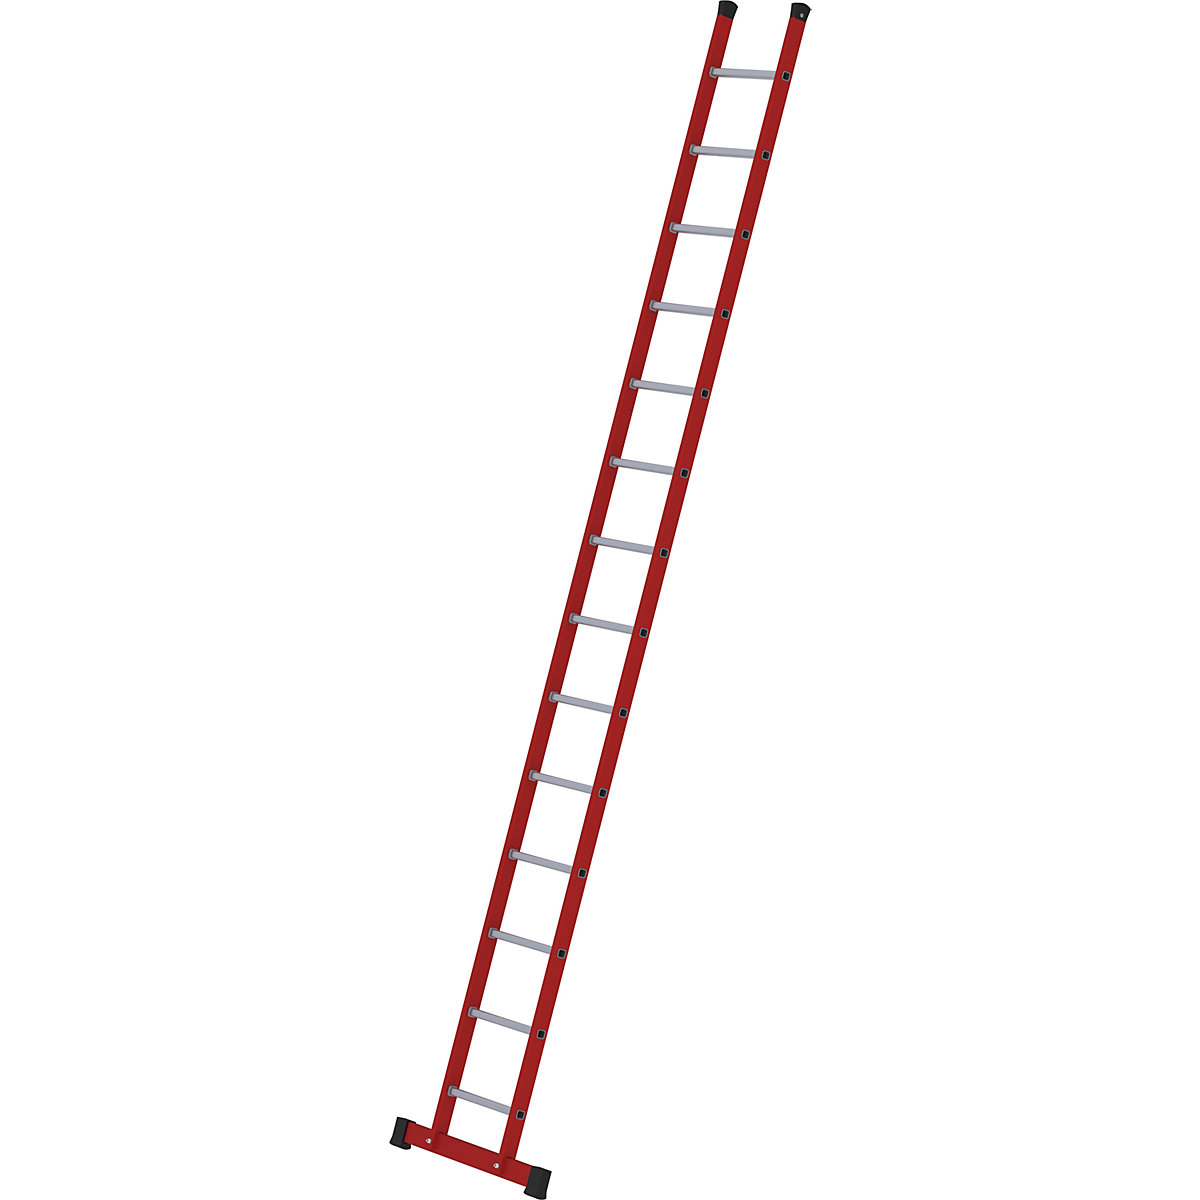 Prislonska lestev iz umetne mase – MUNK, z narebrenimi aluminijastimi klini, 14 klinov, vključno s prečko-1